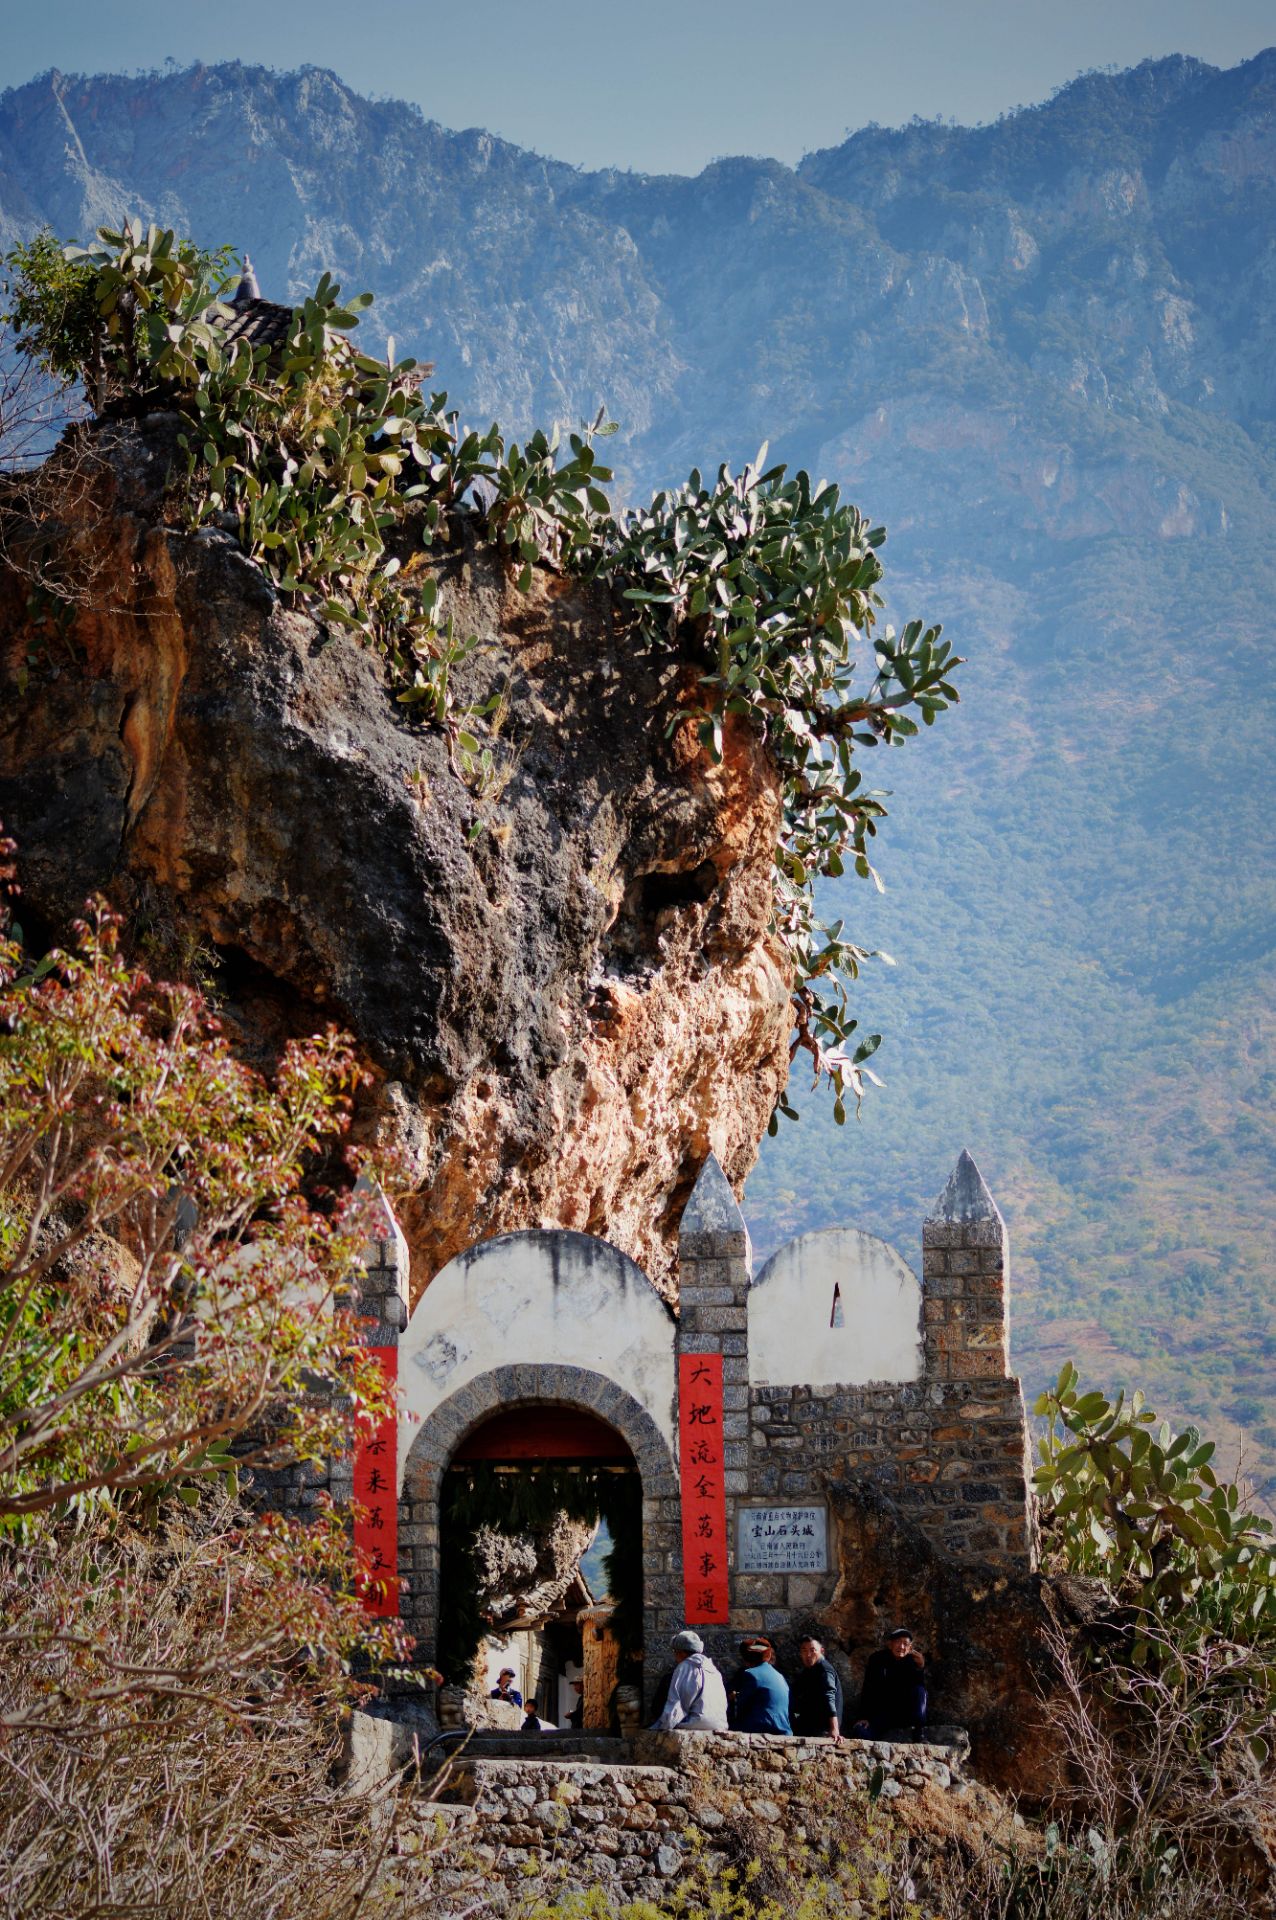 【携程攻略】丽江宝山石头城景点,去年过年,以宝山石头为背景,拍摄的